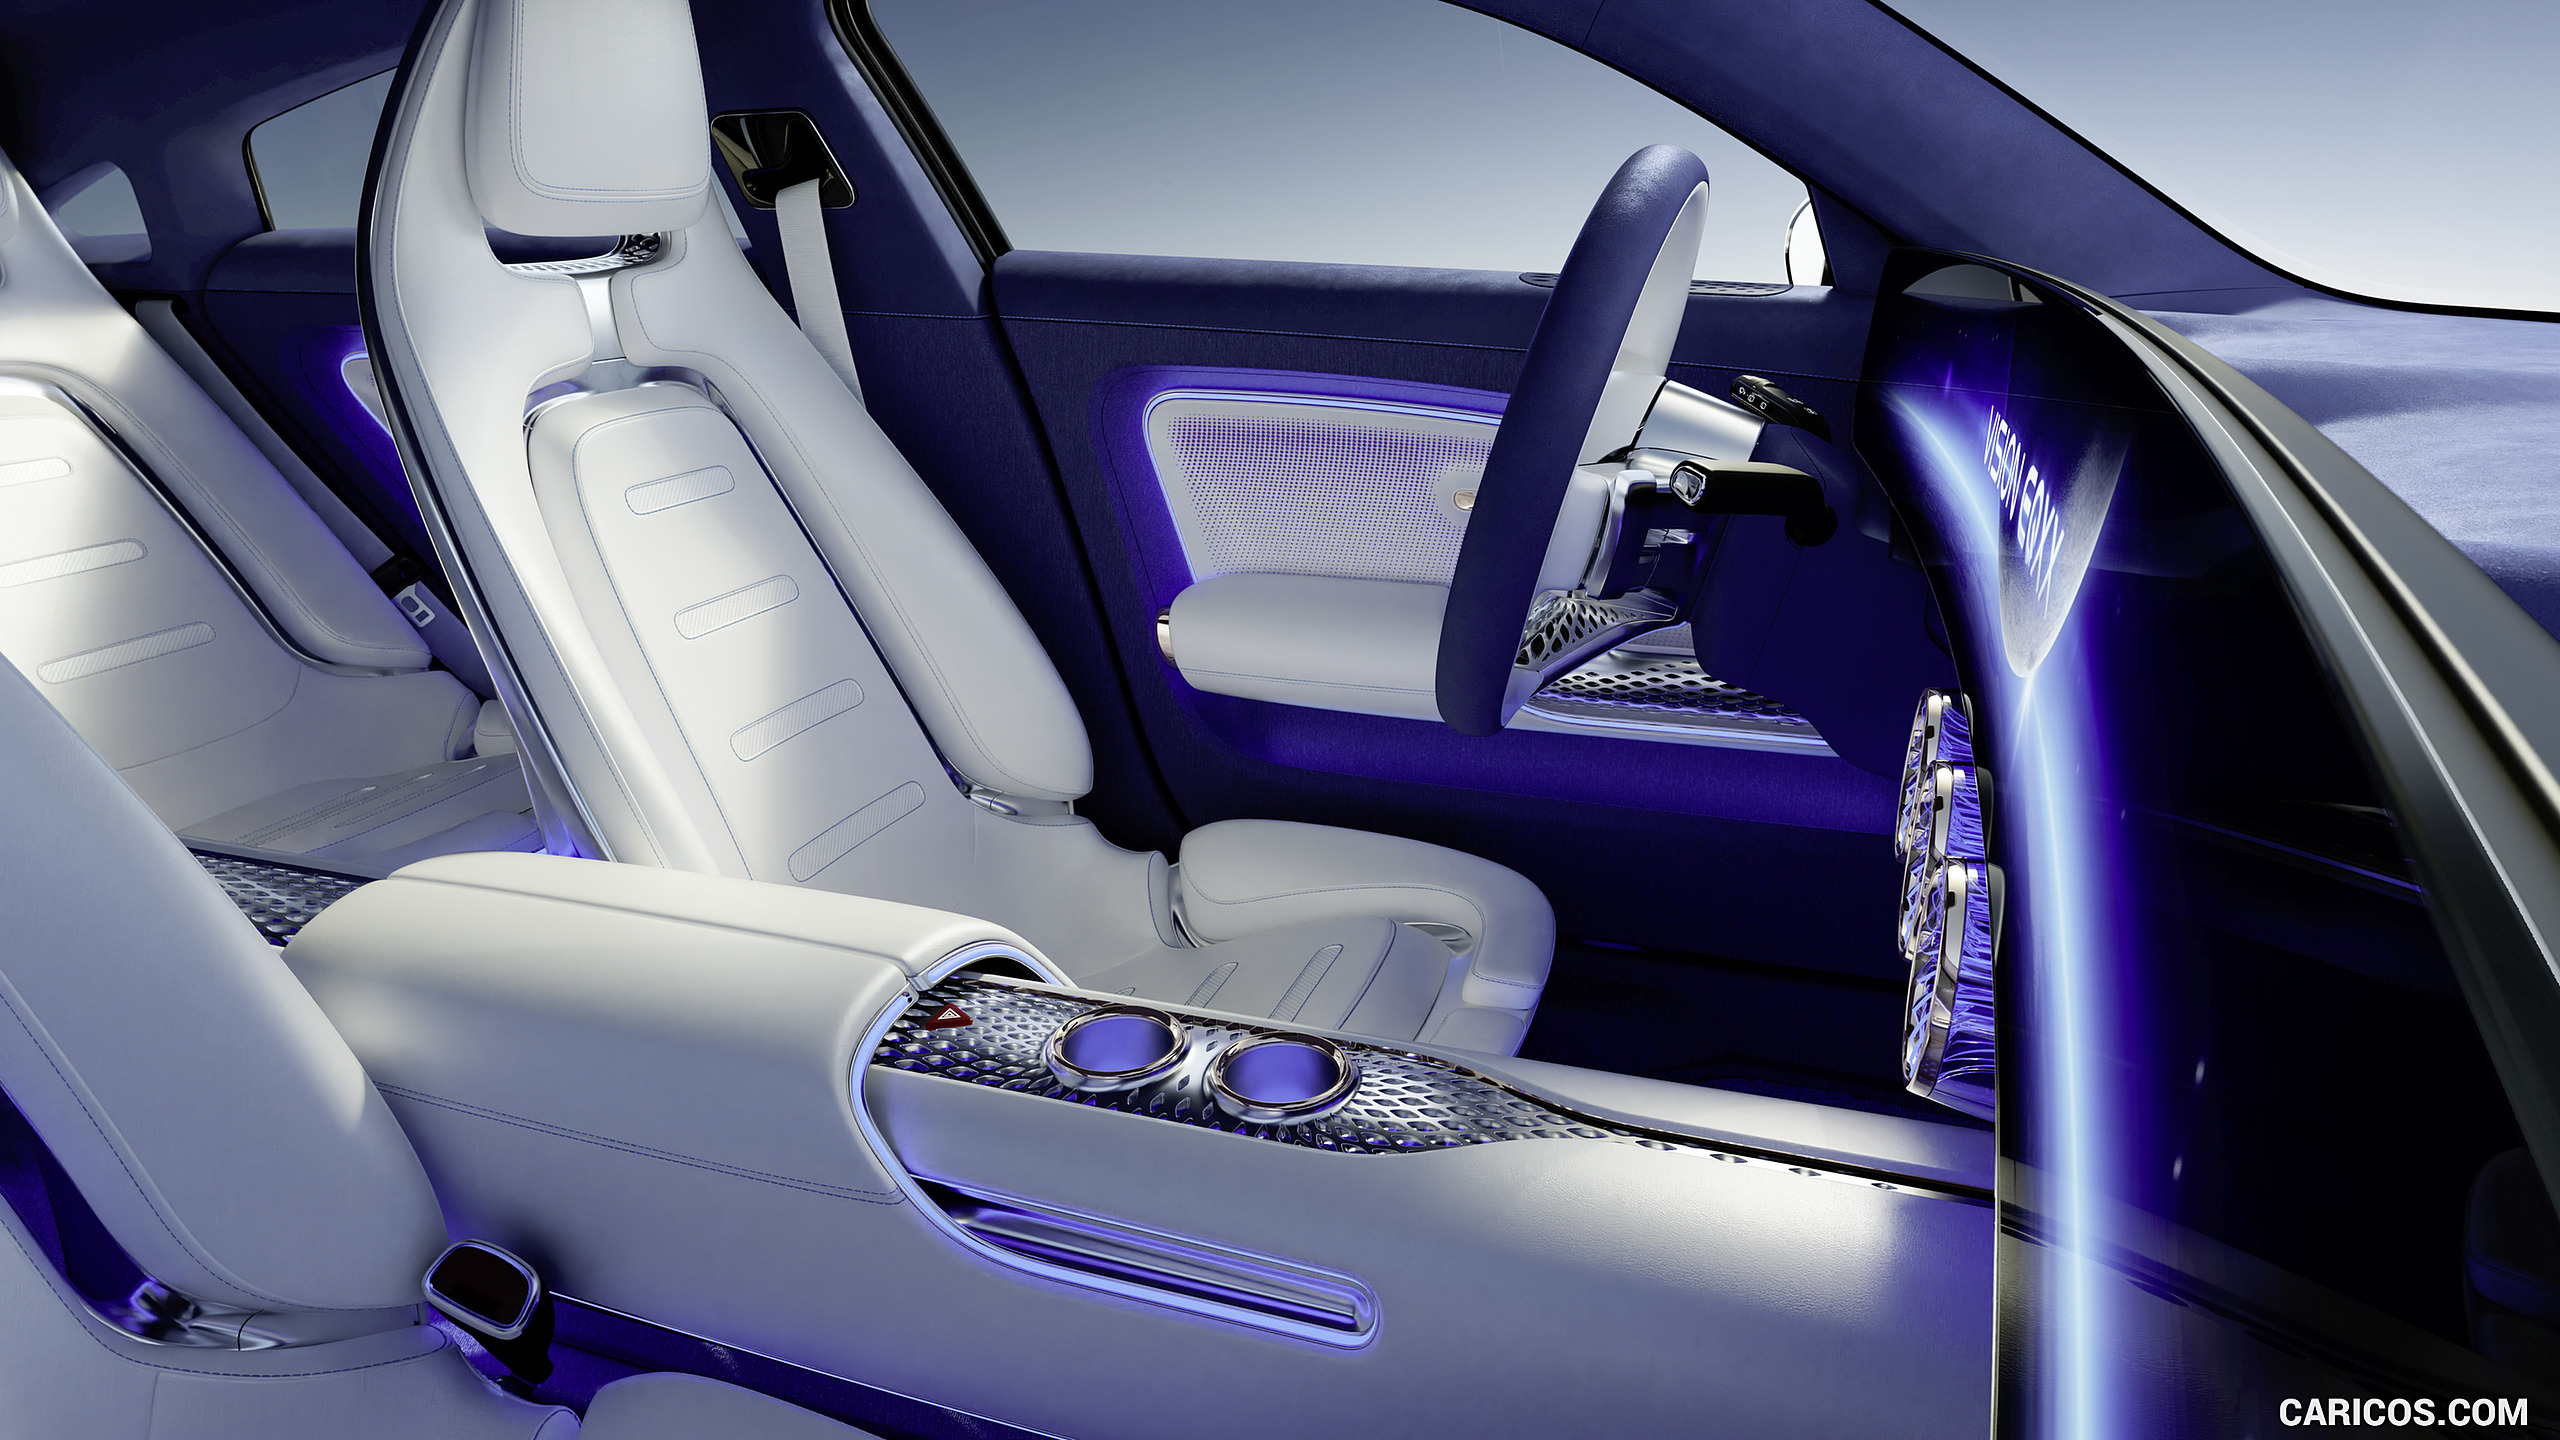 2022 Mercedes-Benz Vision EQXX - Interior, Seats, #45 of 146